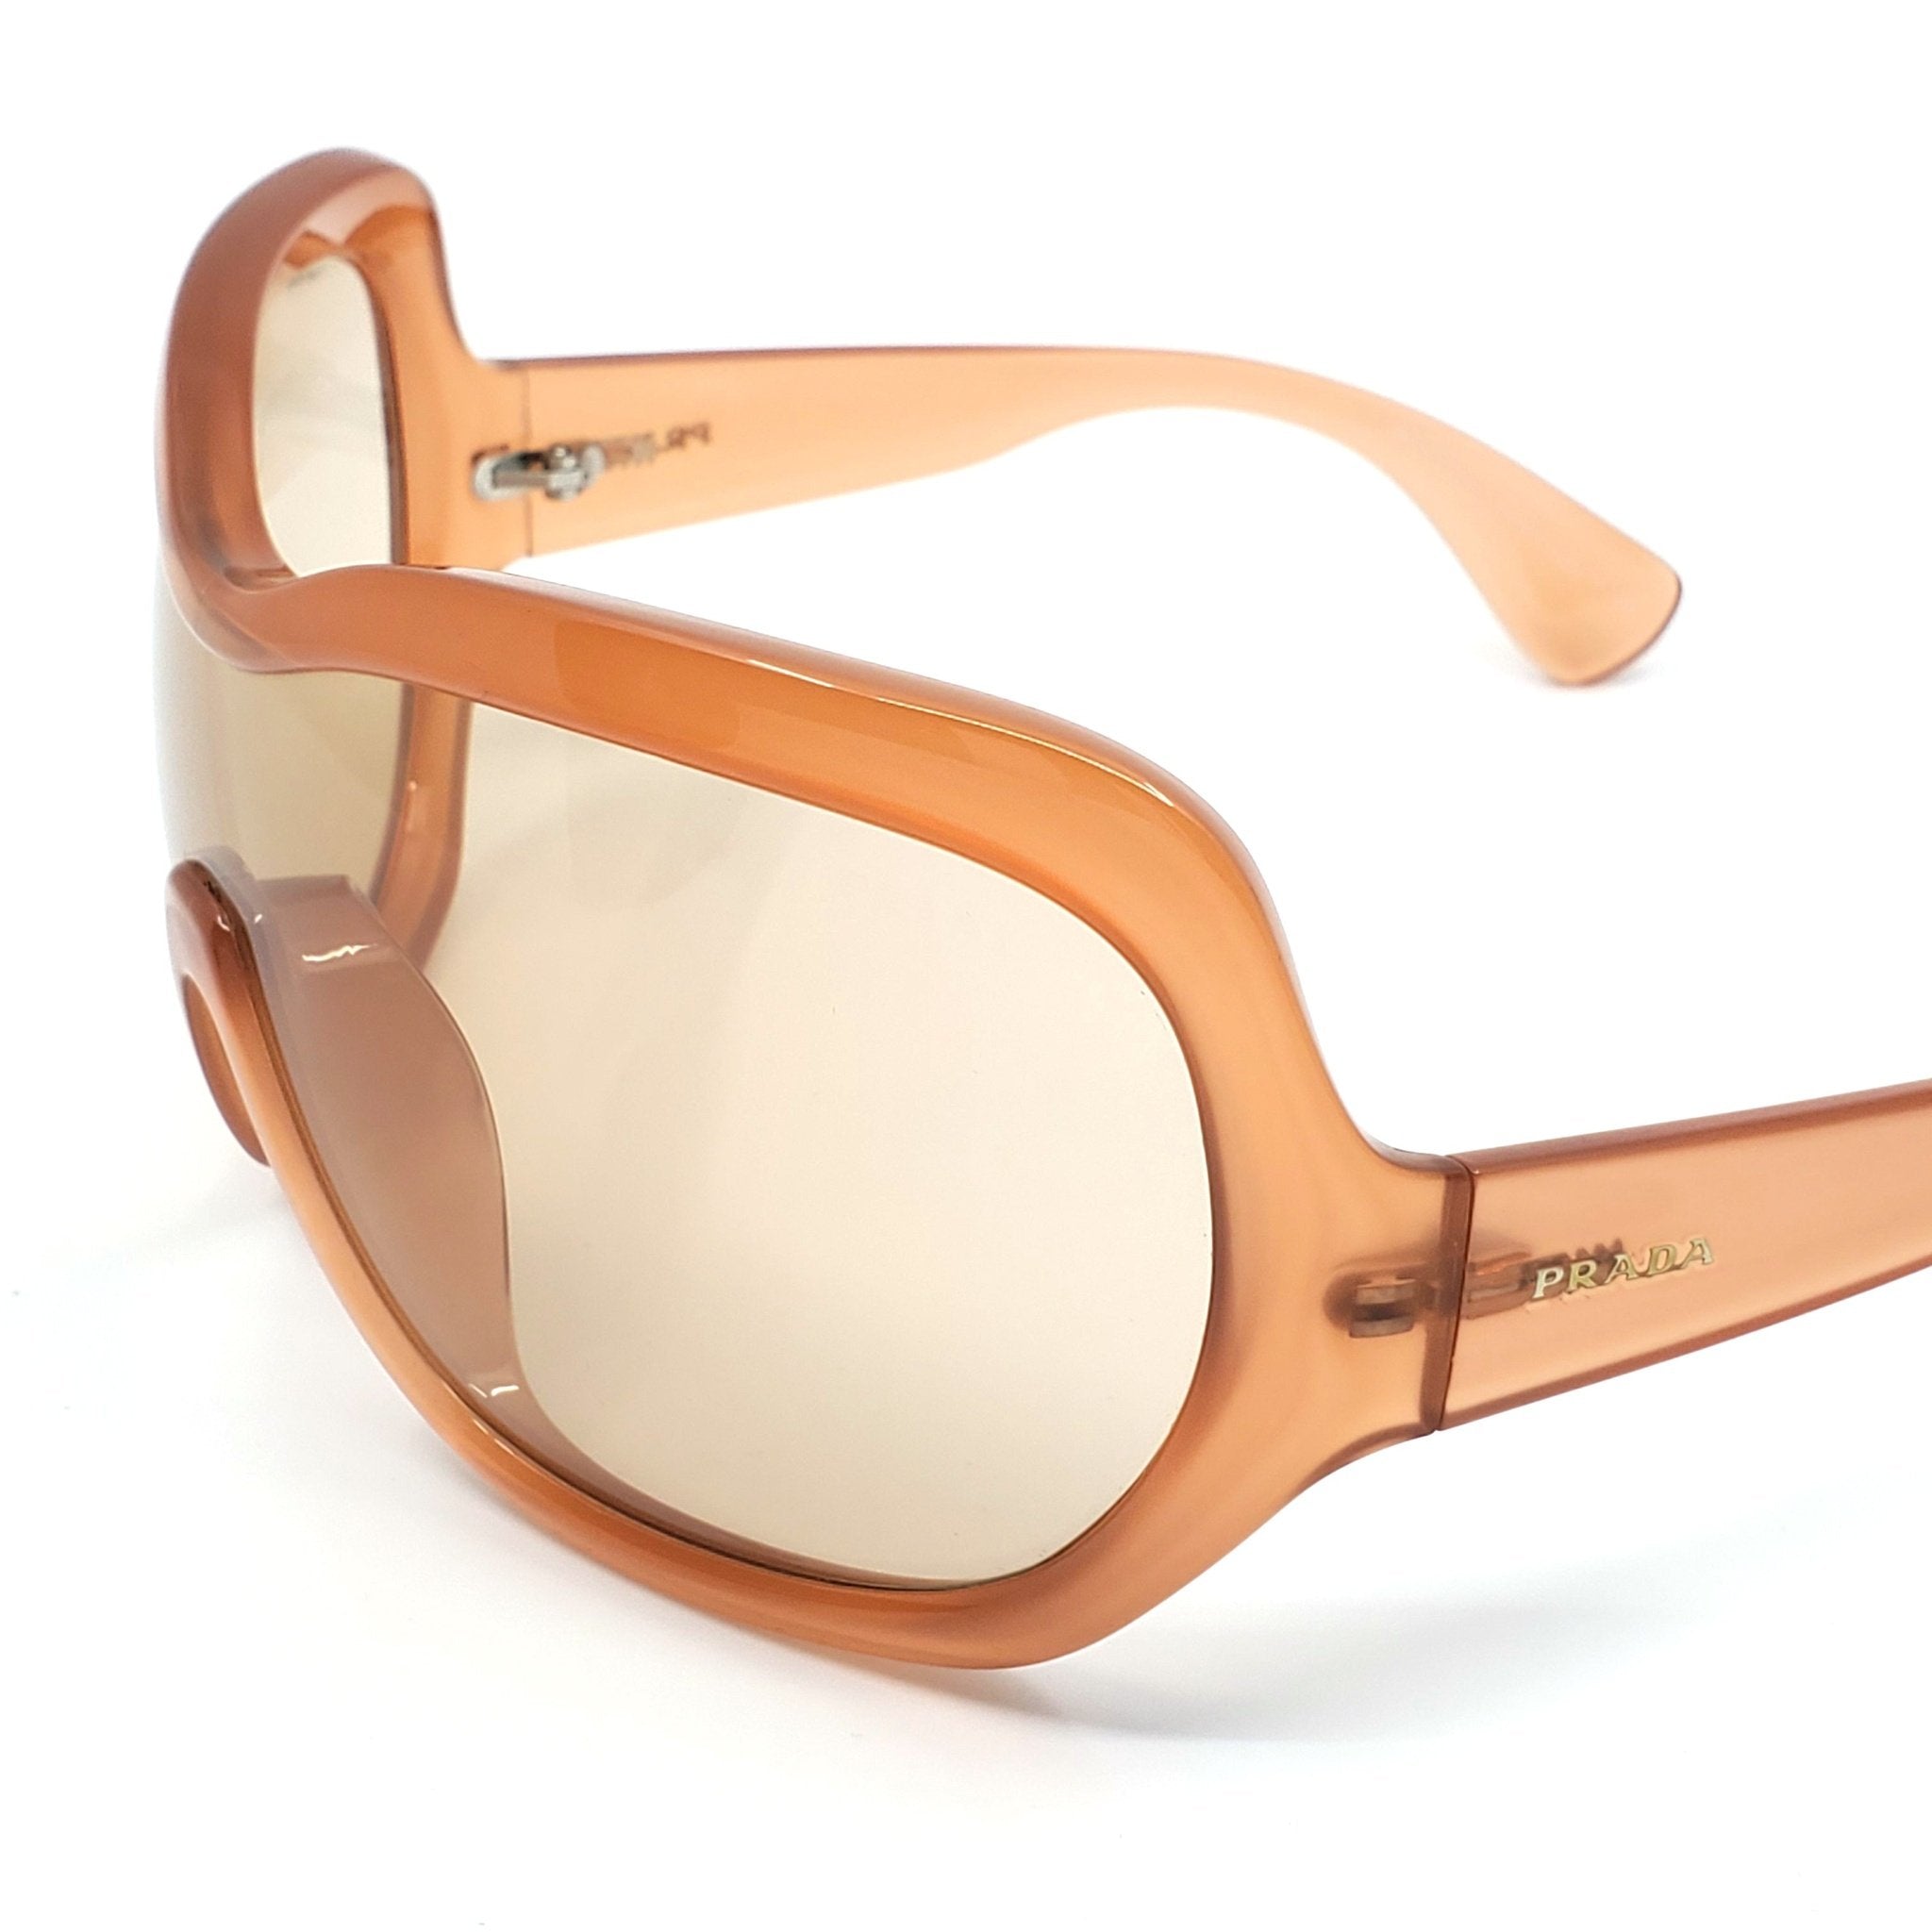 Prada Illusion Over-sized Shield Sunglasses - SPR05OGAD